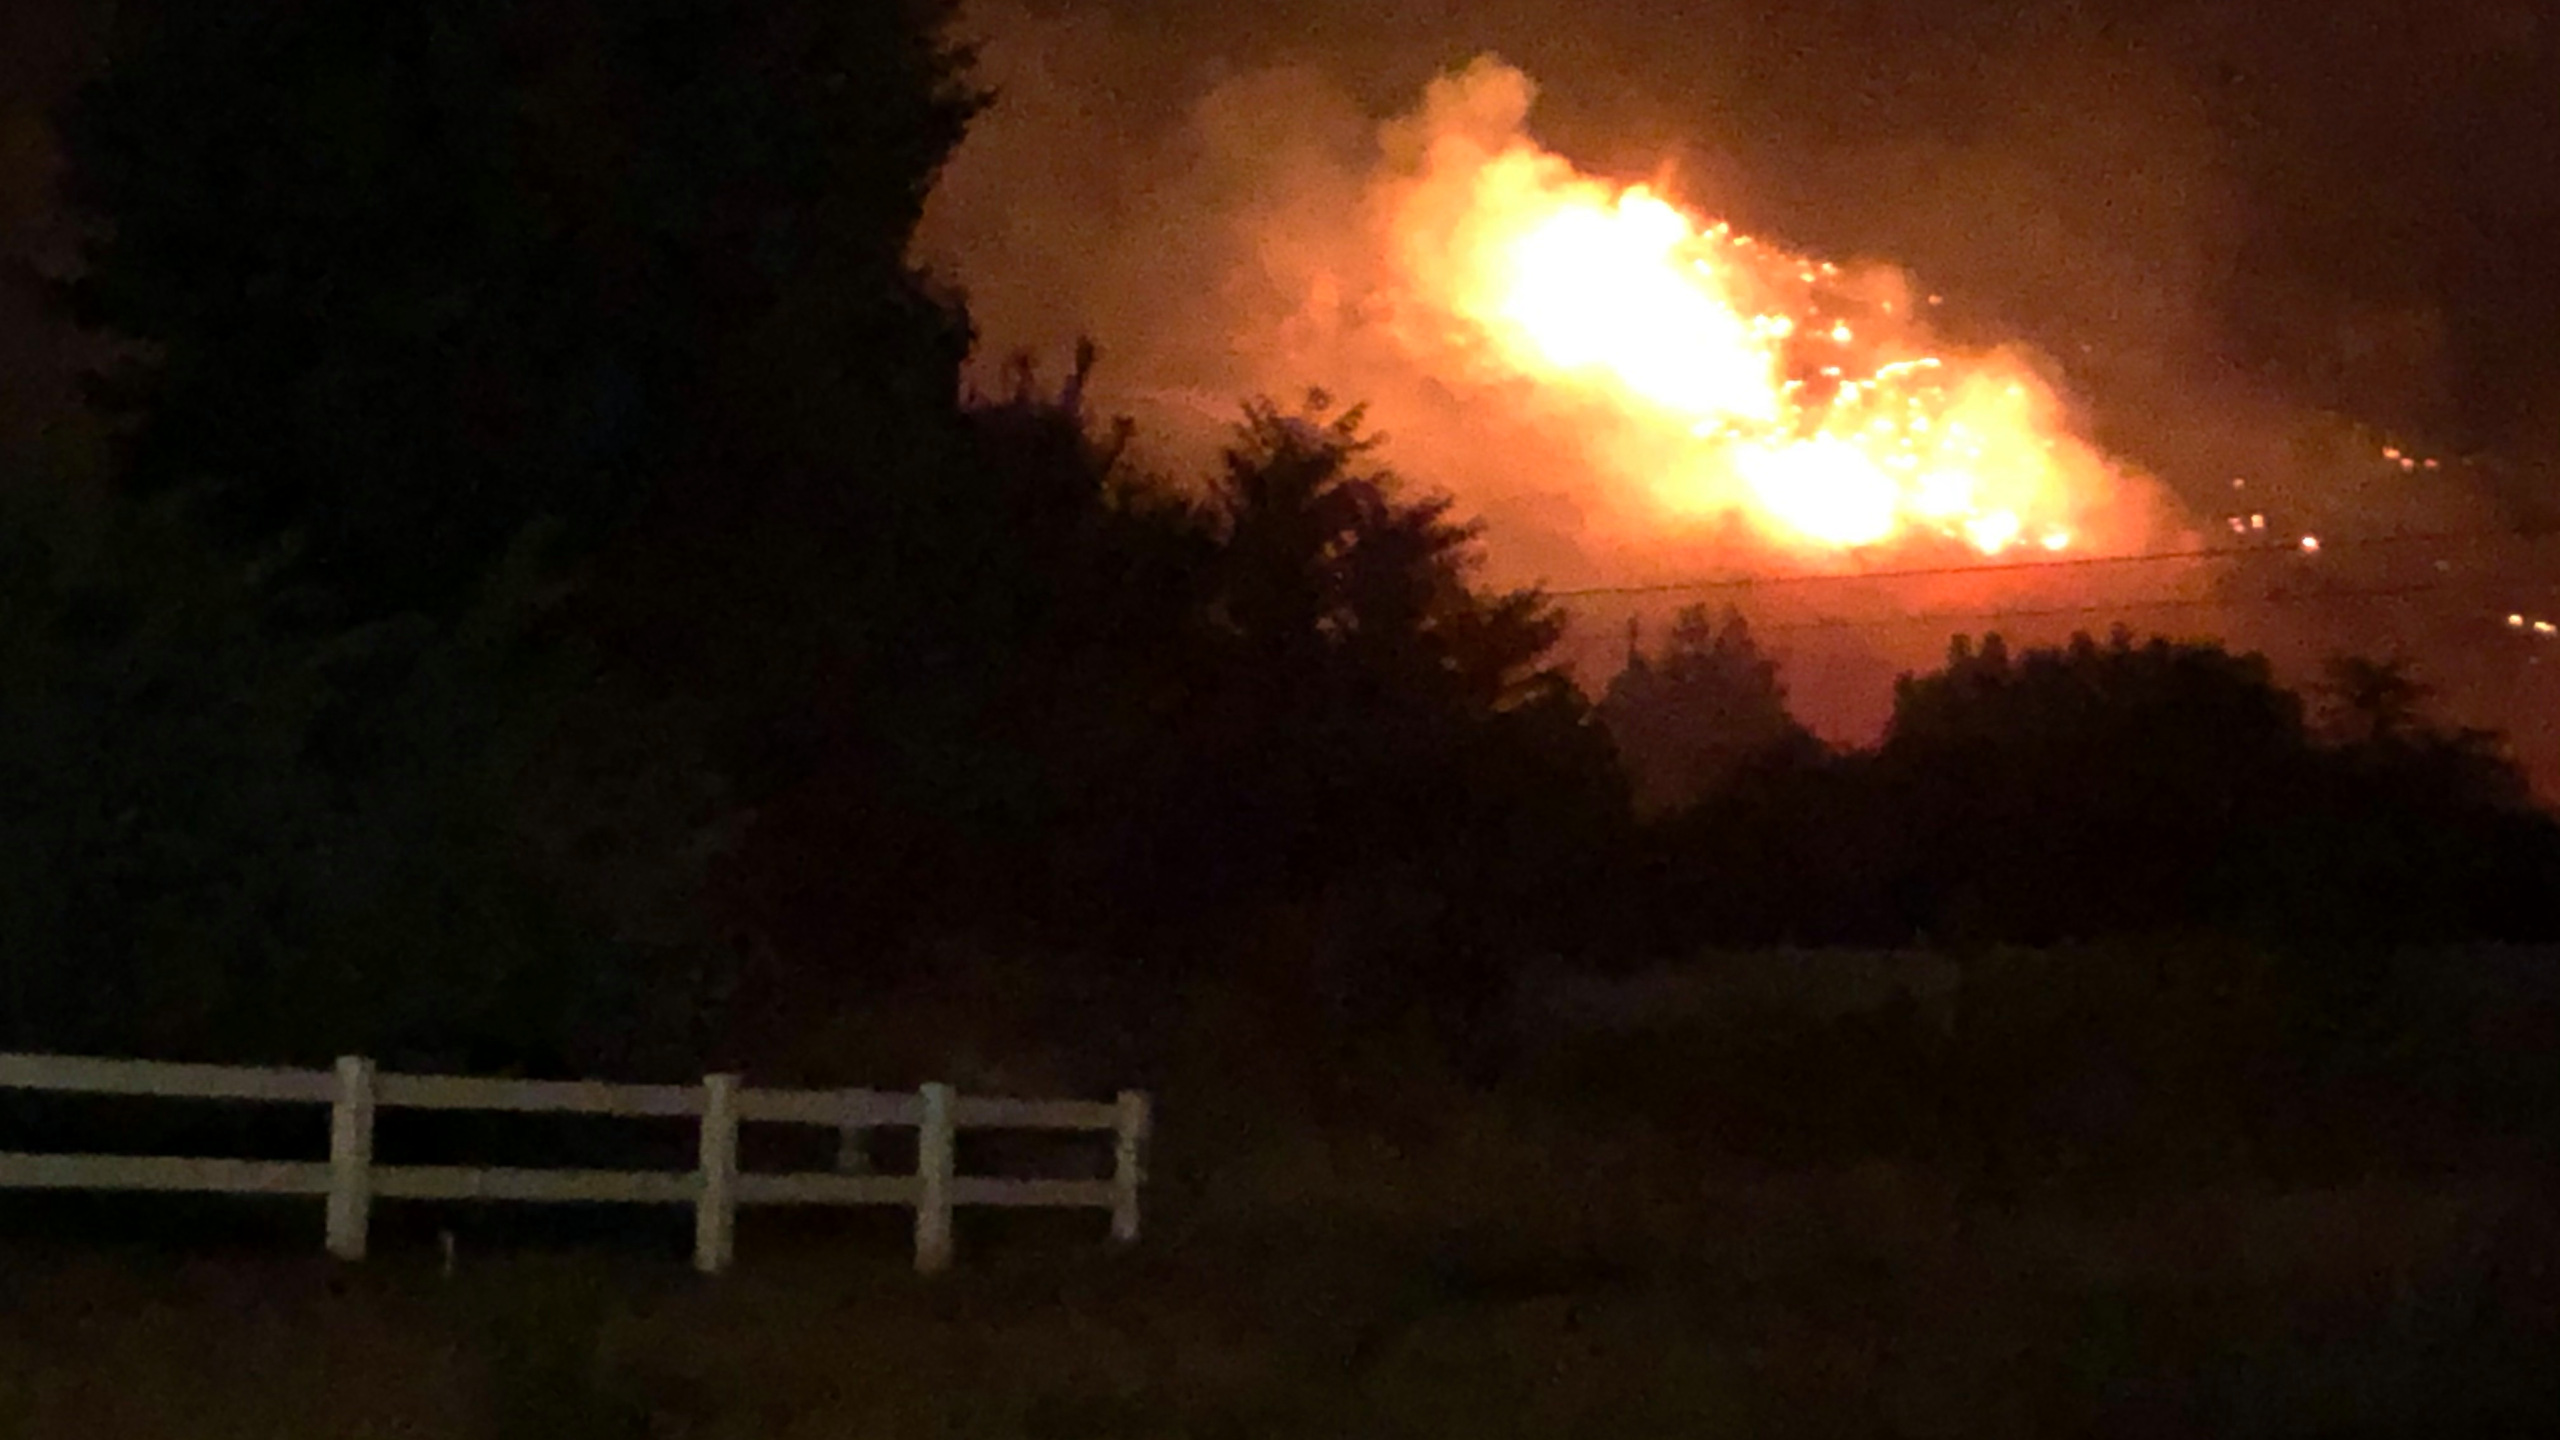 Battle Creek 2 Fire burning above Pleasant Grove, Utah, Saturday, September 12, 2020.